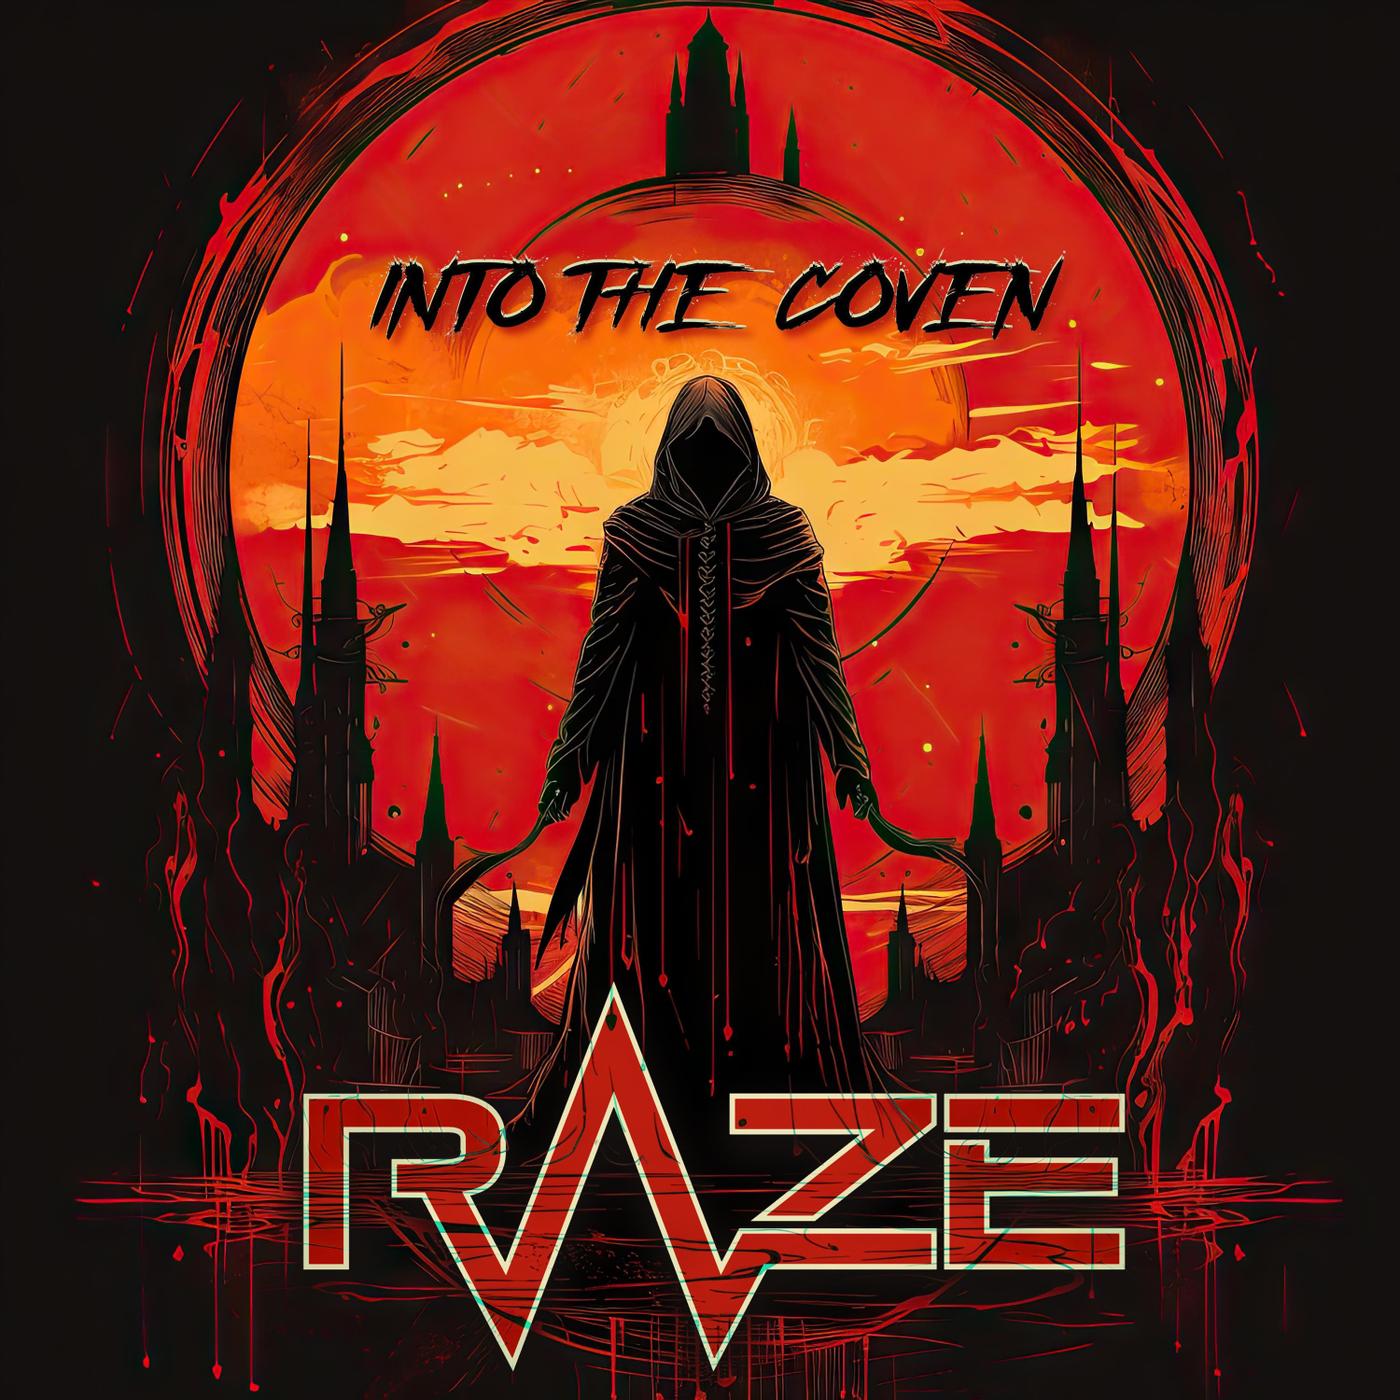 Raze - Into the coven